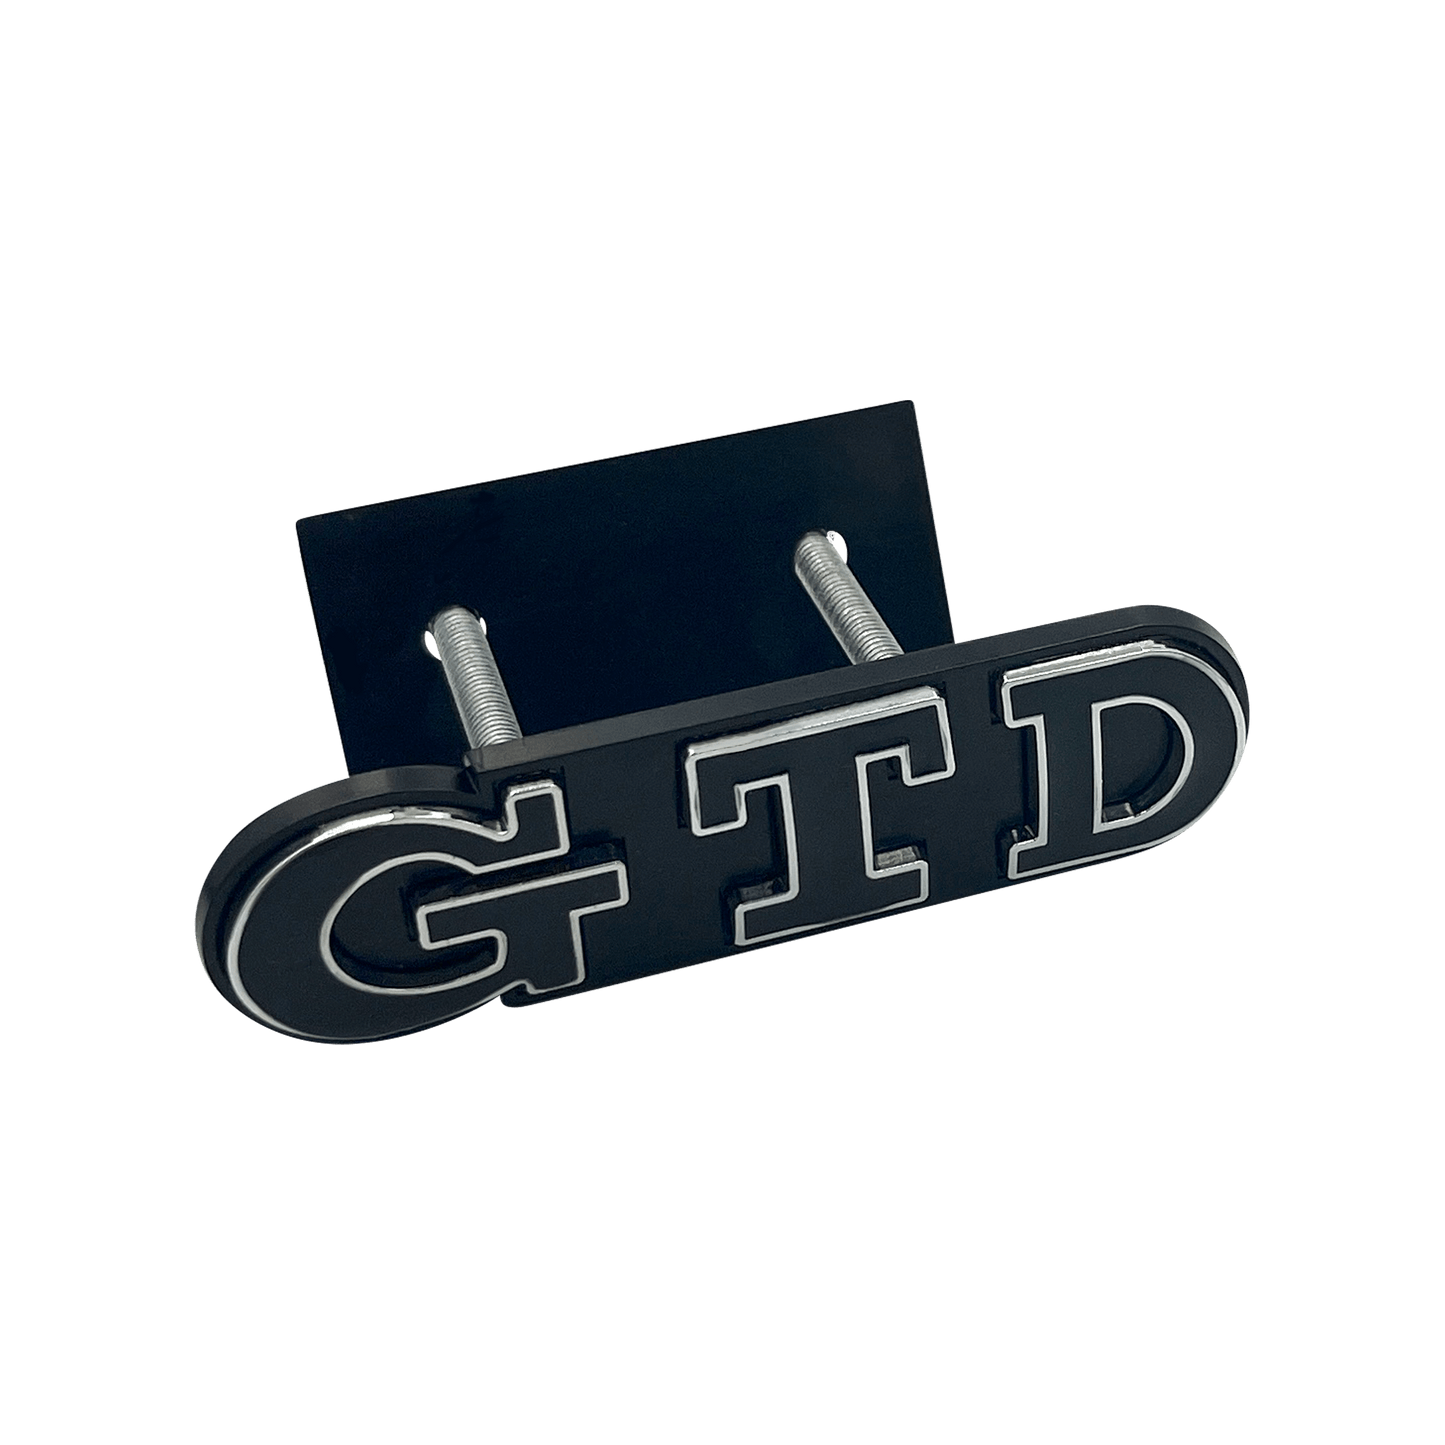 Black VW GTD Front Emblem Badge 